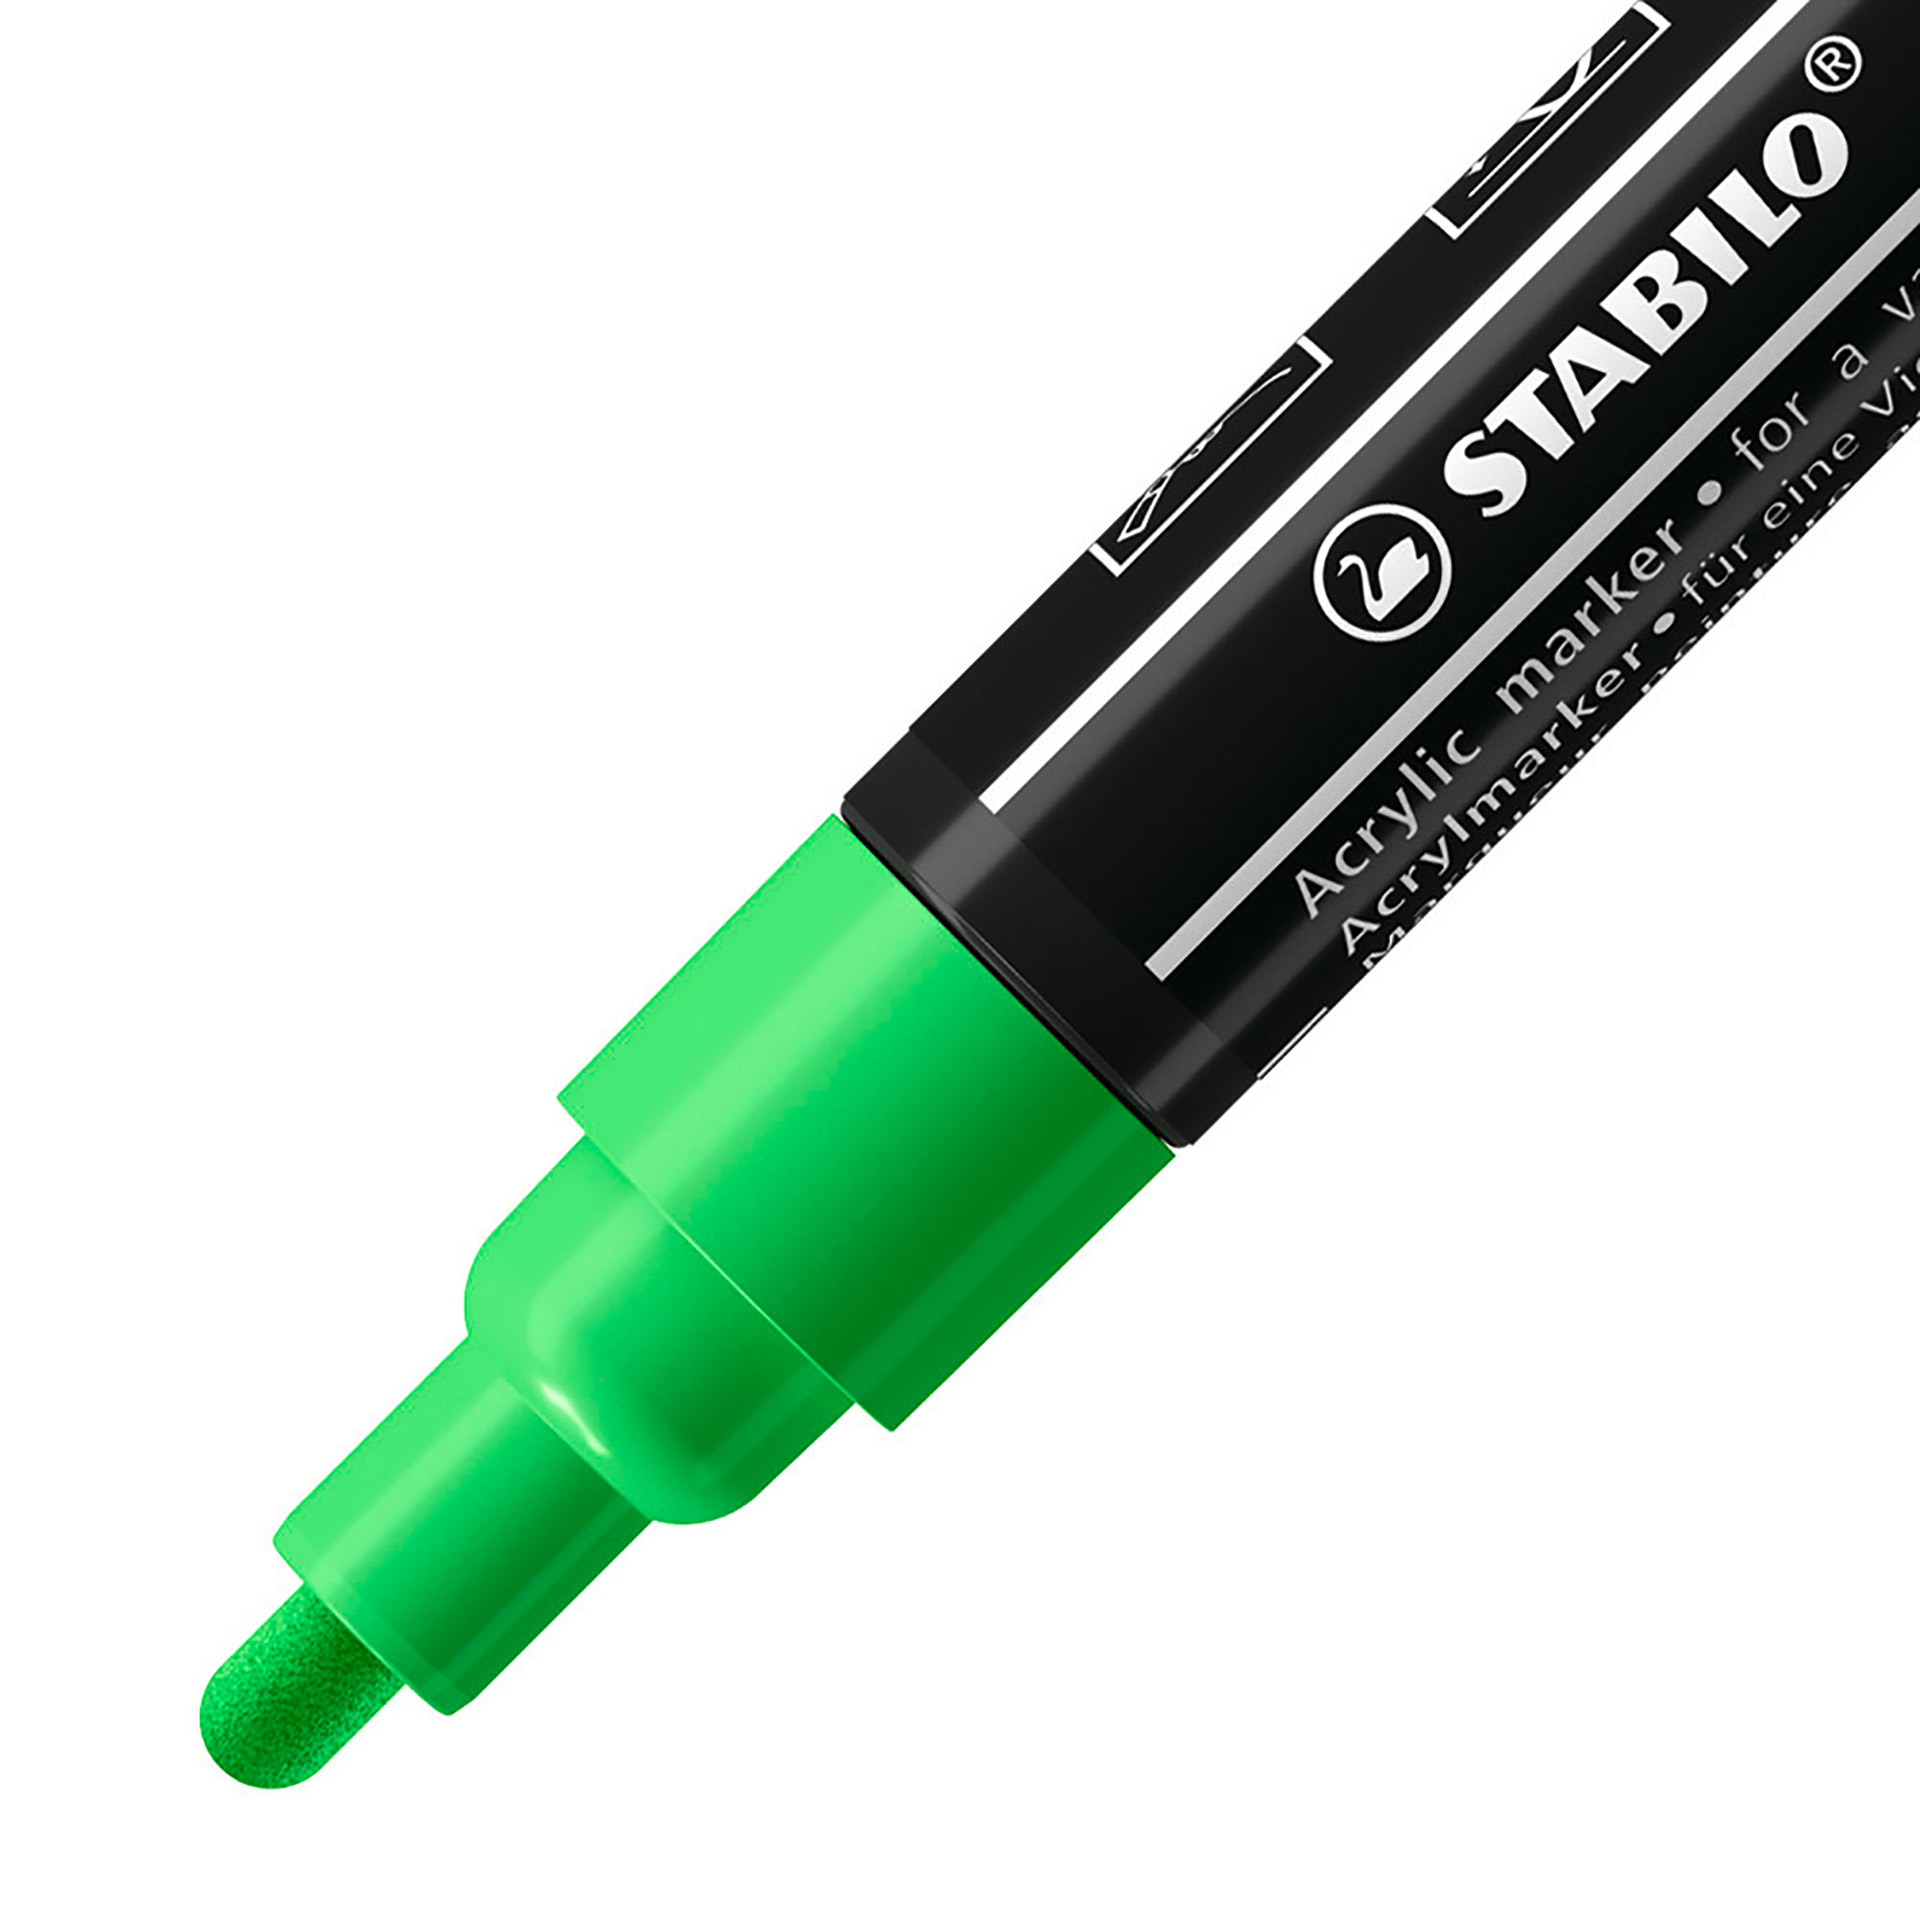 STABILO FREE Acrylic - T300 Punta rotonda 2-3mm - Confezione da 5 - Verde Foglia, , large